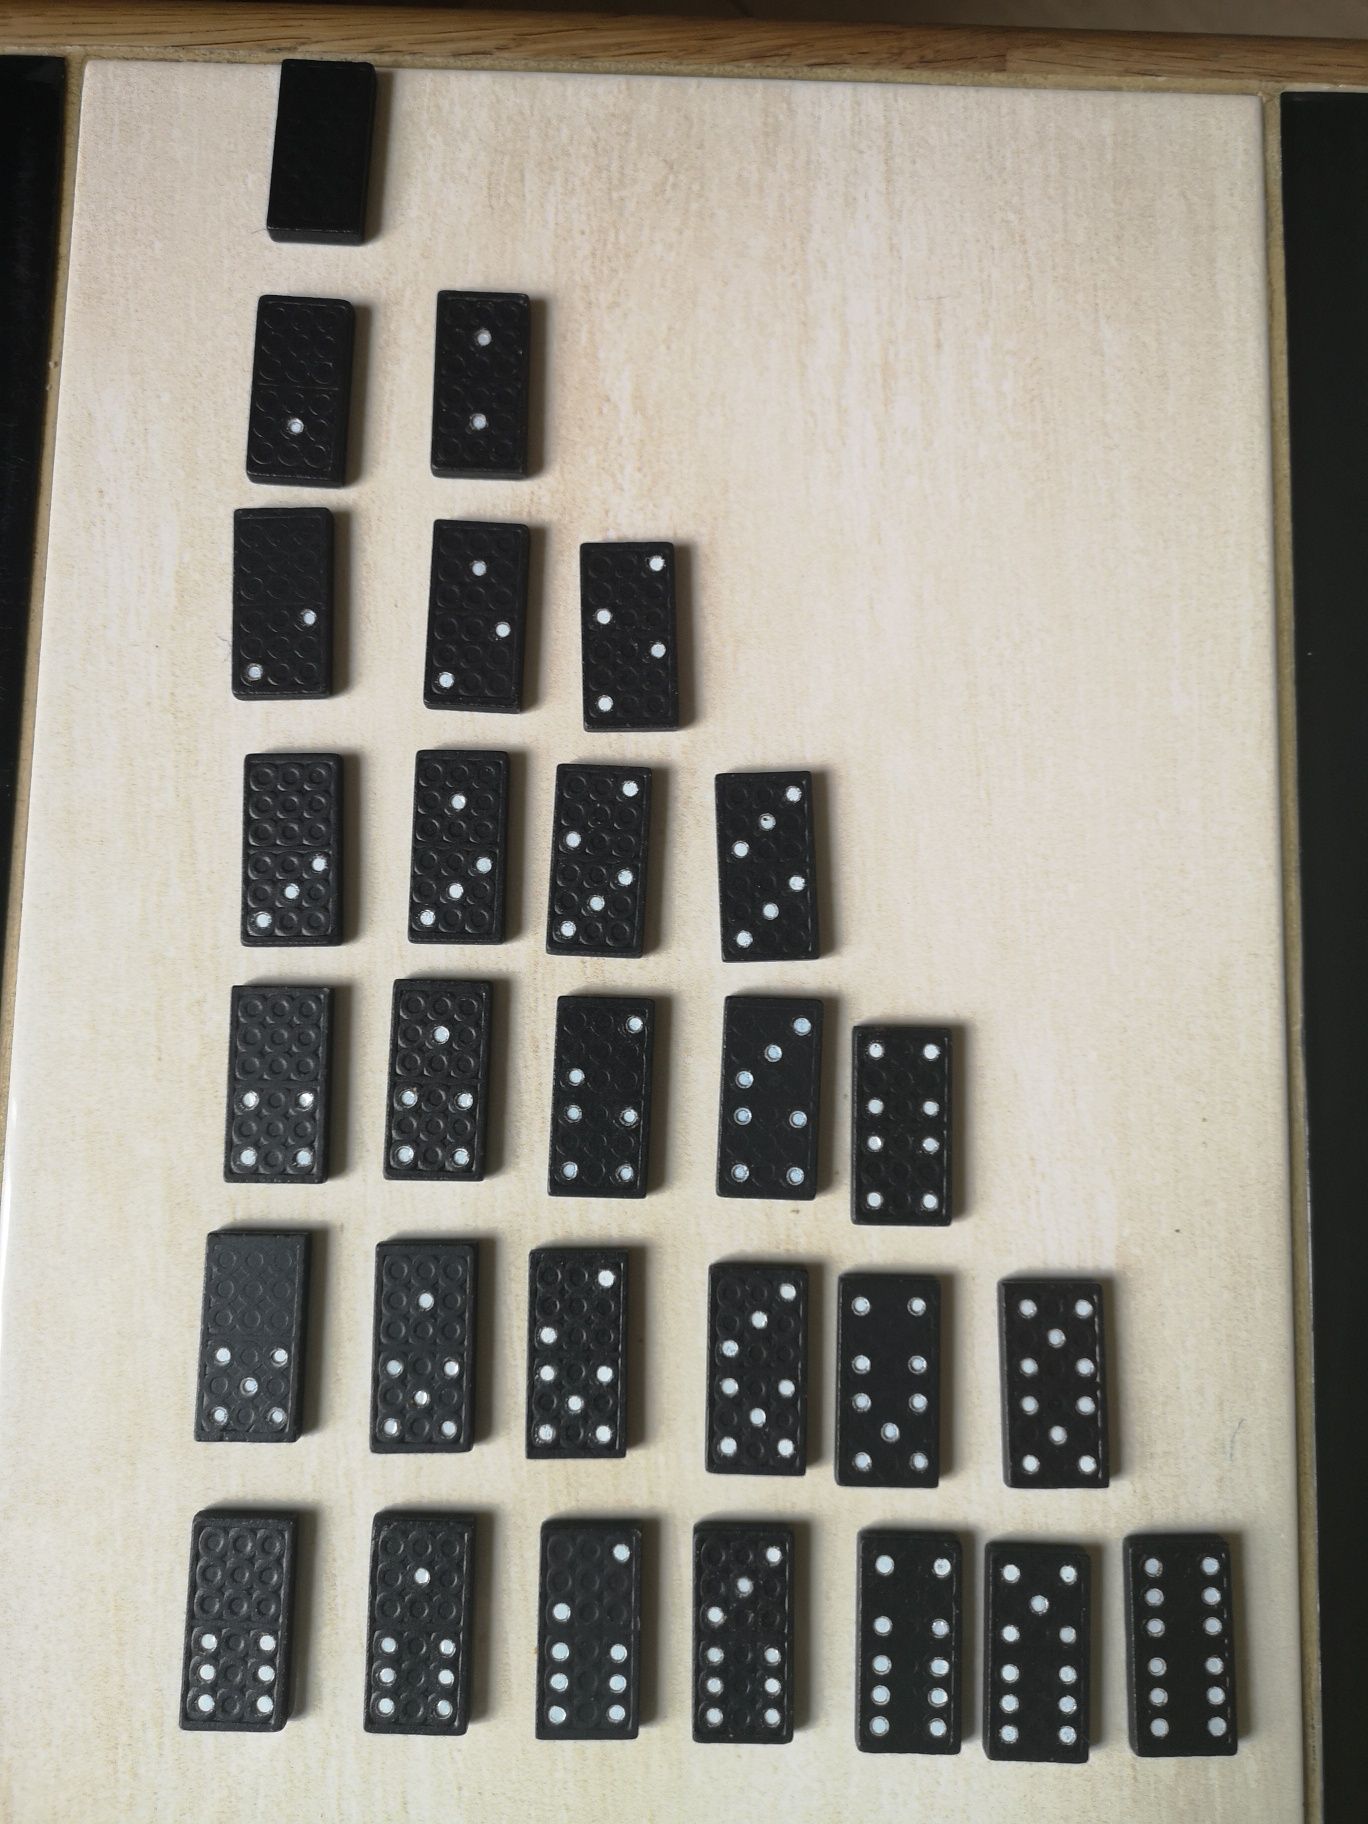 Domino gra dla dzieci